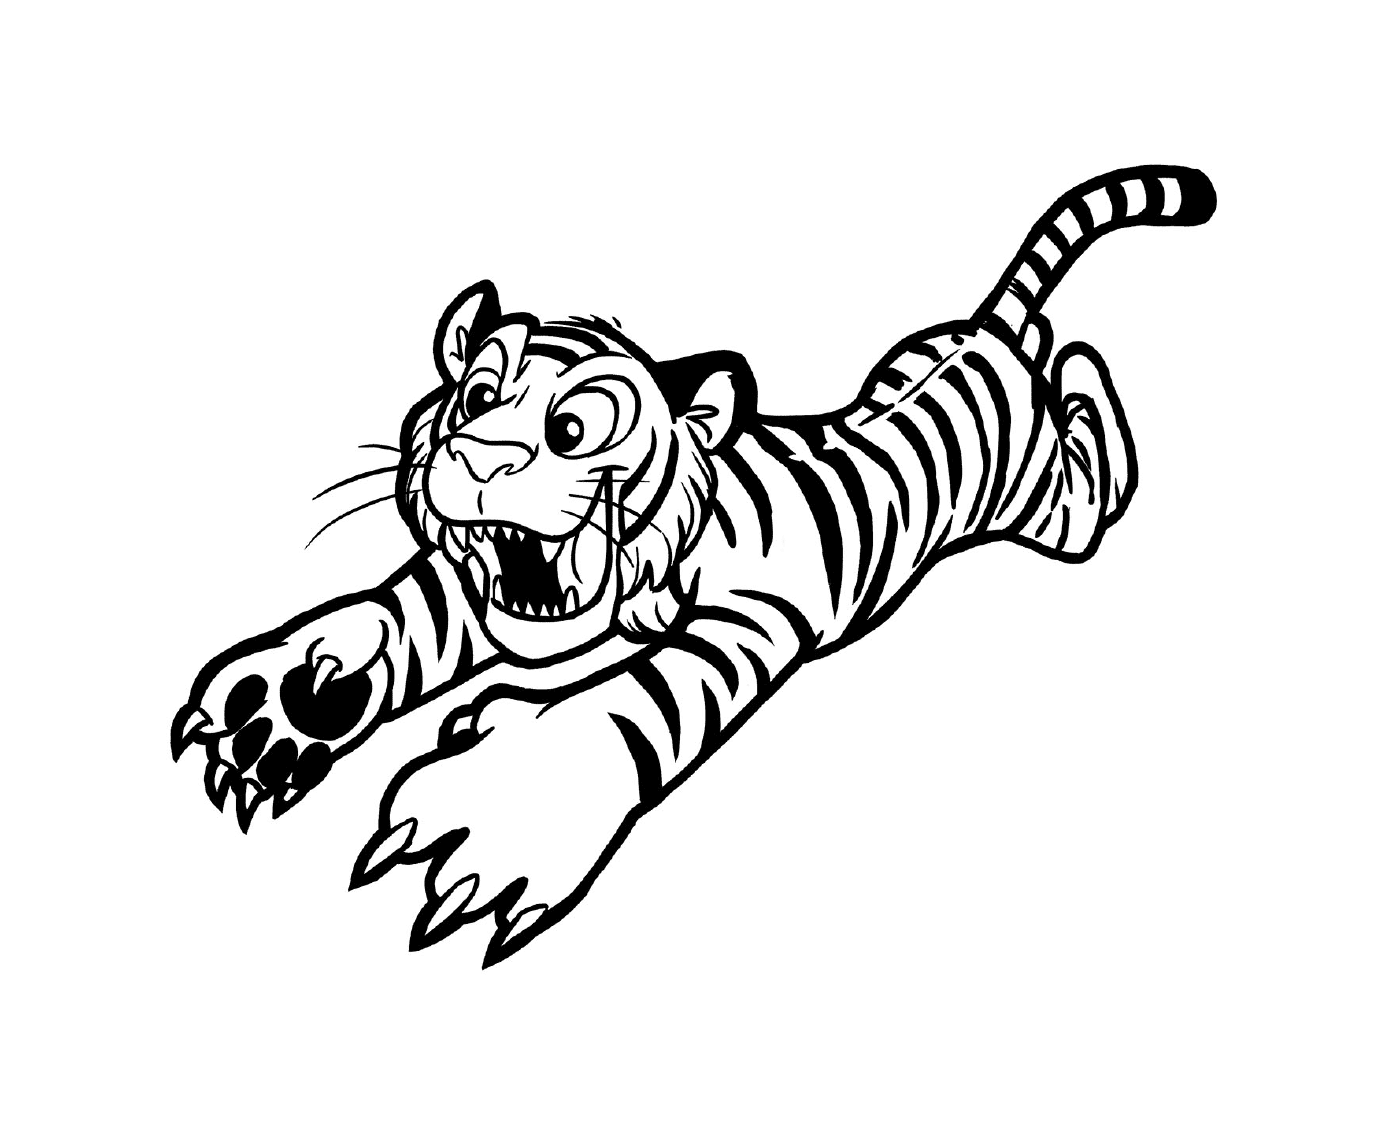  Ein Tiger in Aktion 